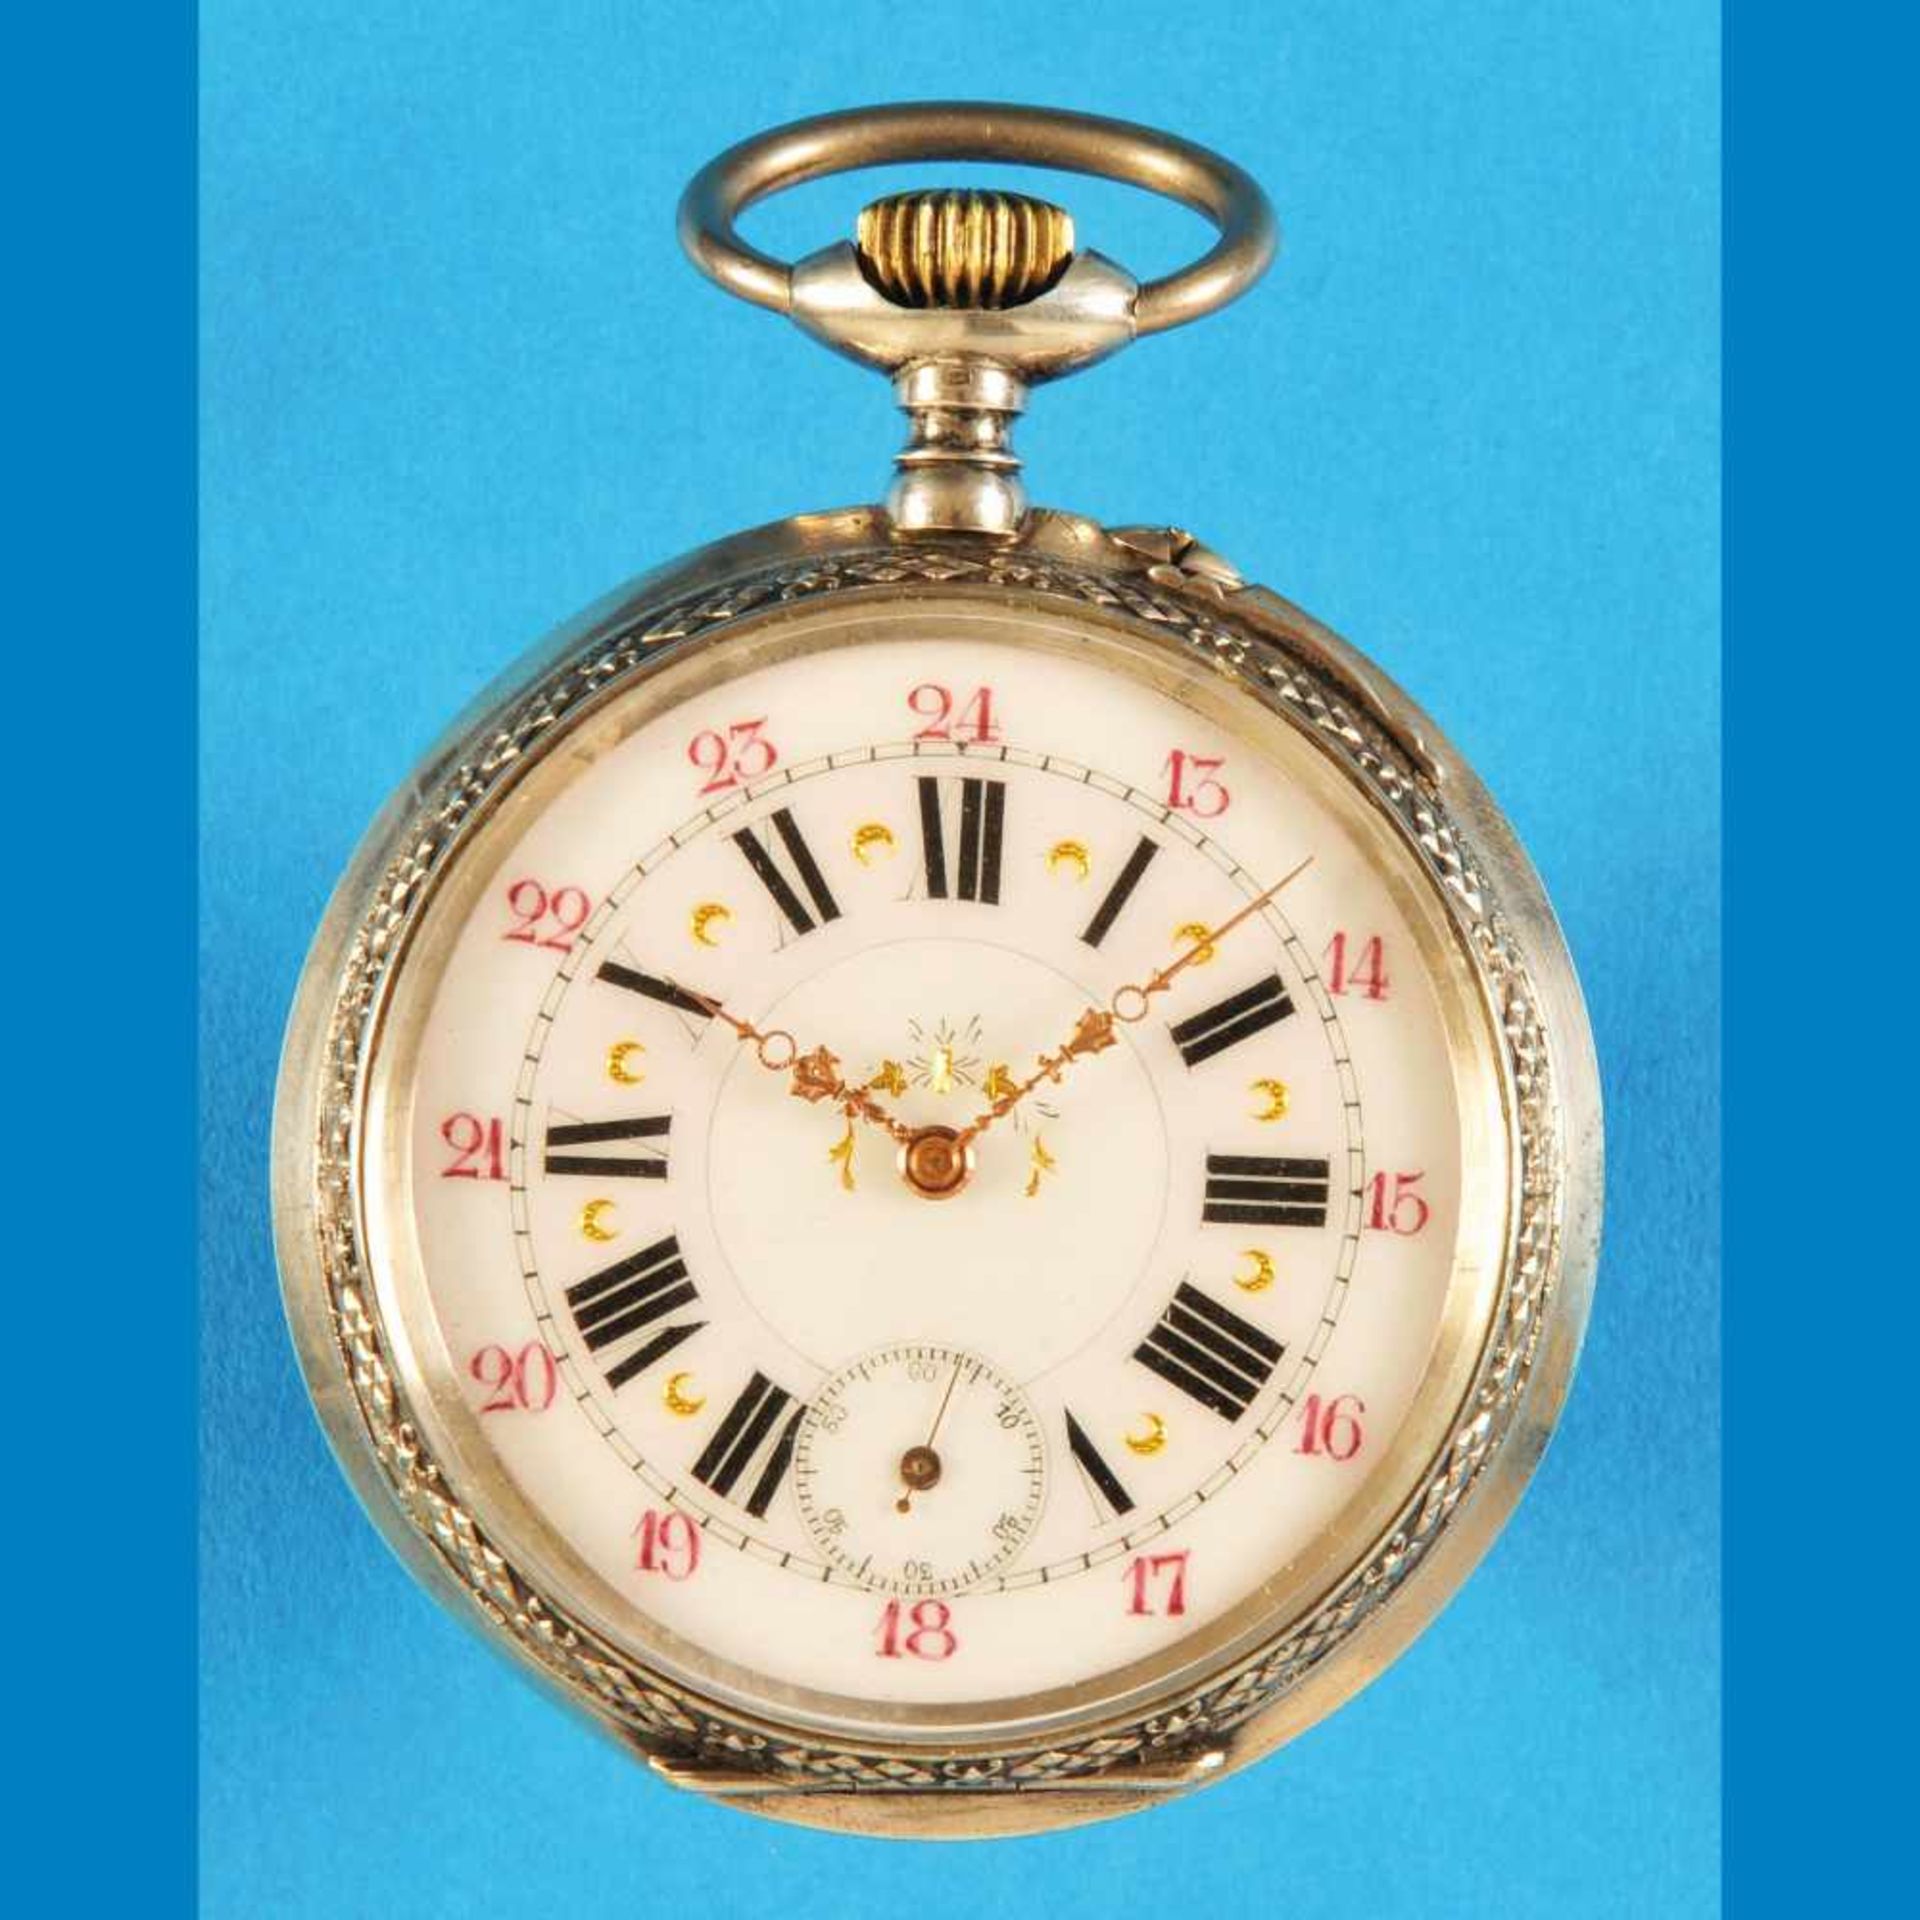 Big silver pocket watchGroße Silbertaschenuhr mit graviertem Segelschiff und 2-farbigem Zif